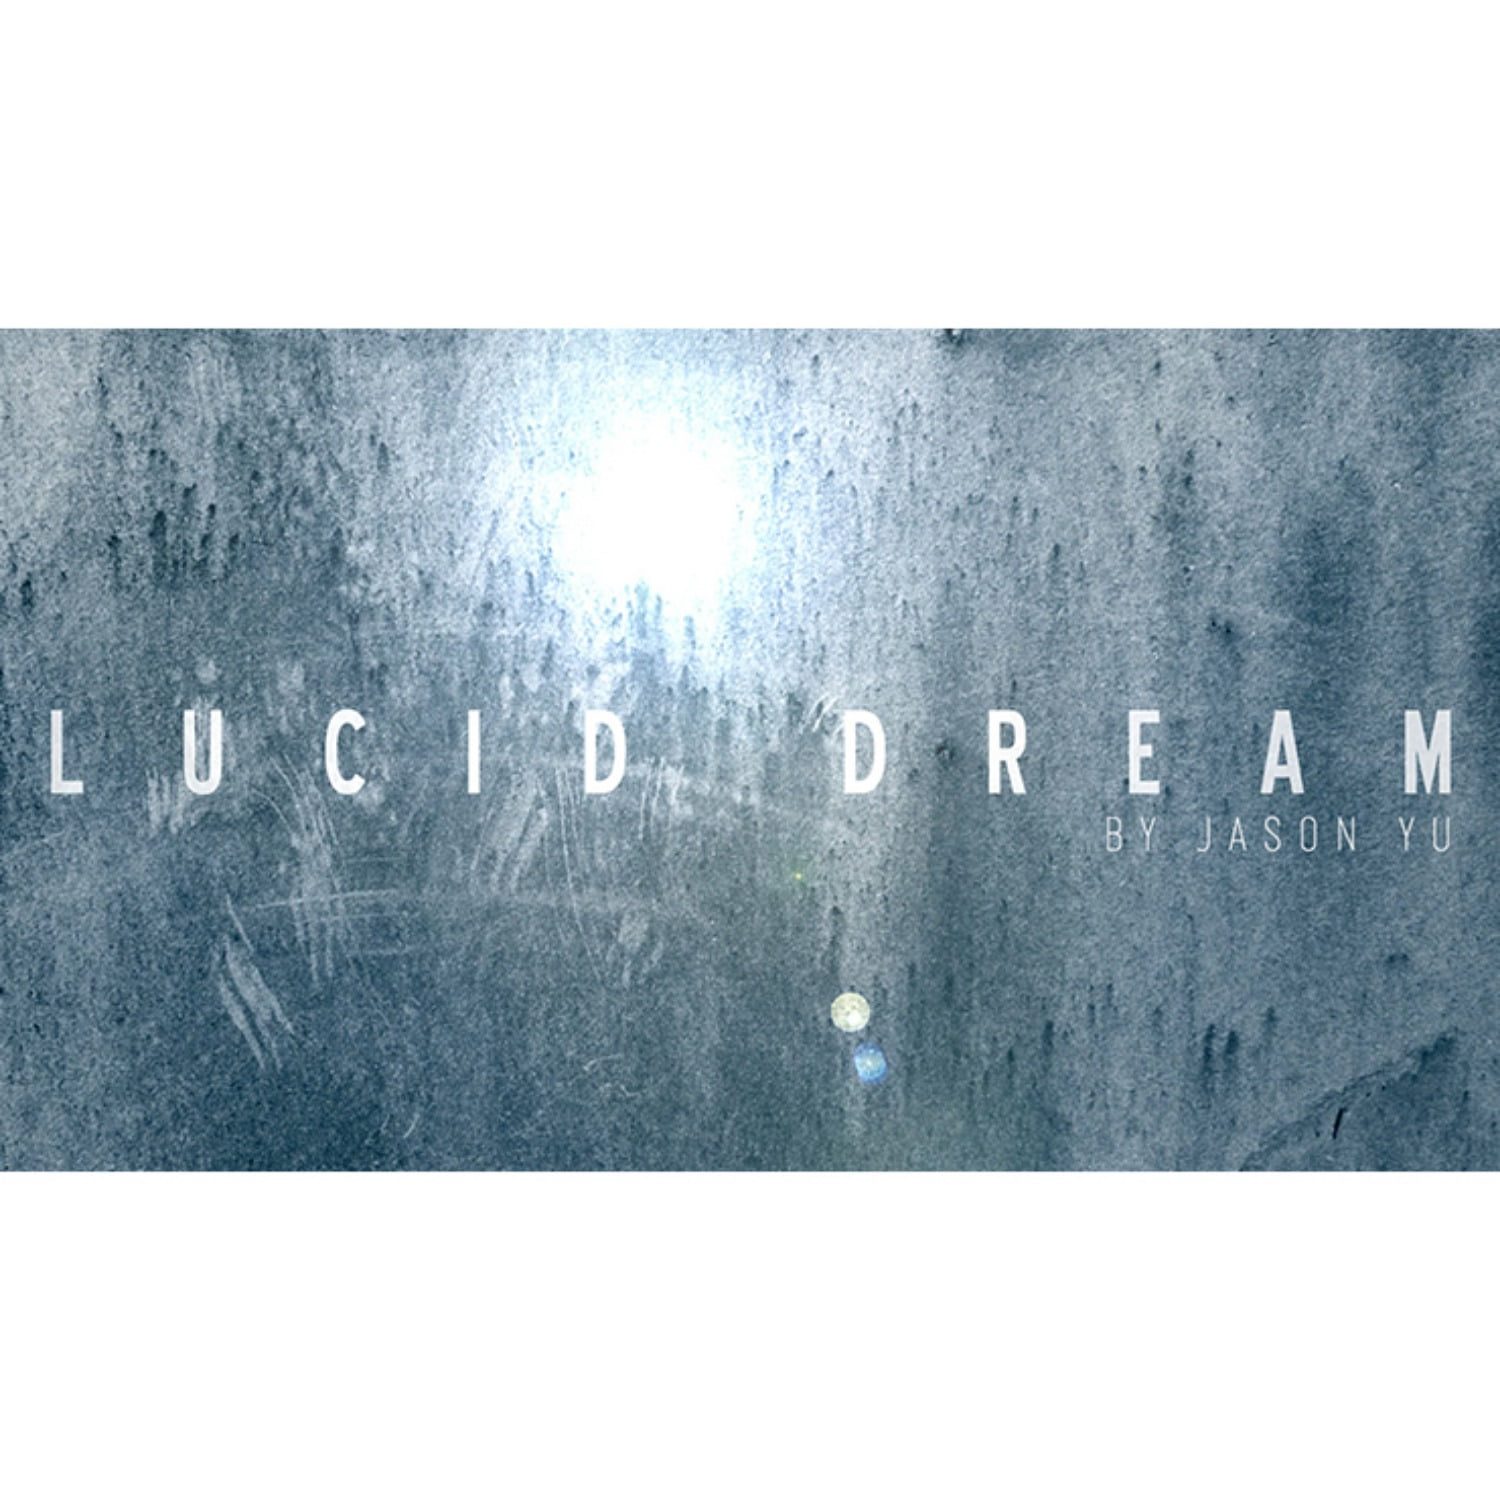 [루시드 드림]Lucid Dream by Jason Yu - 사진속의 그림이 순식간에 실물로 바뀌어 버립니다. 물론 사진에 있던 그림은 없어져 버립니다.